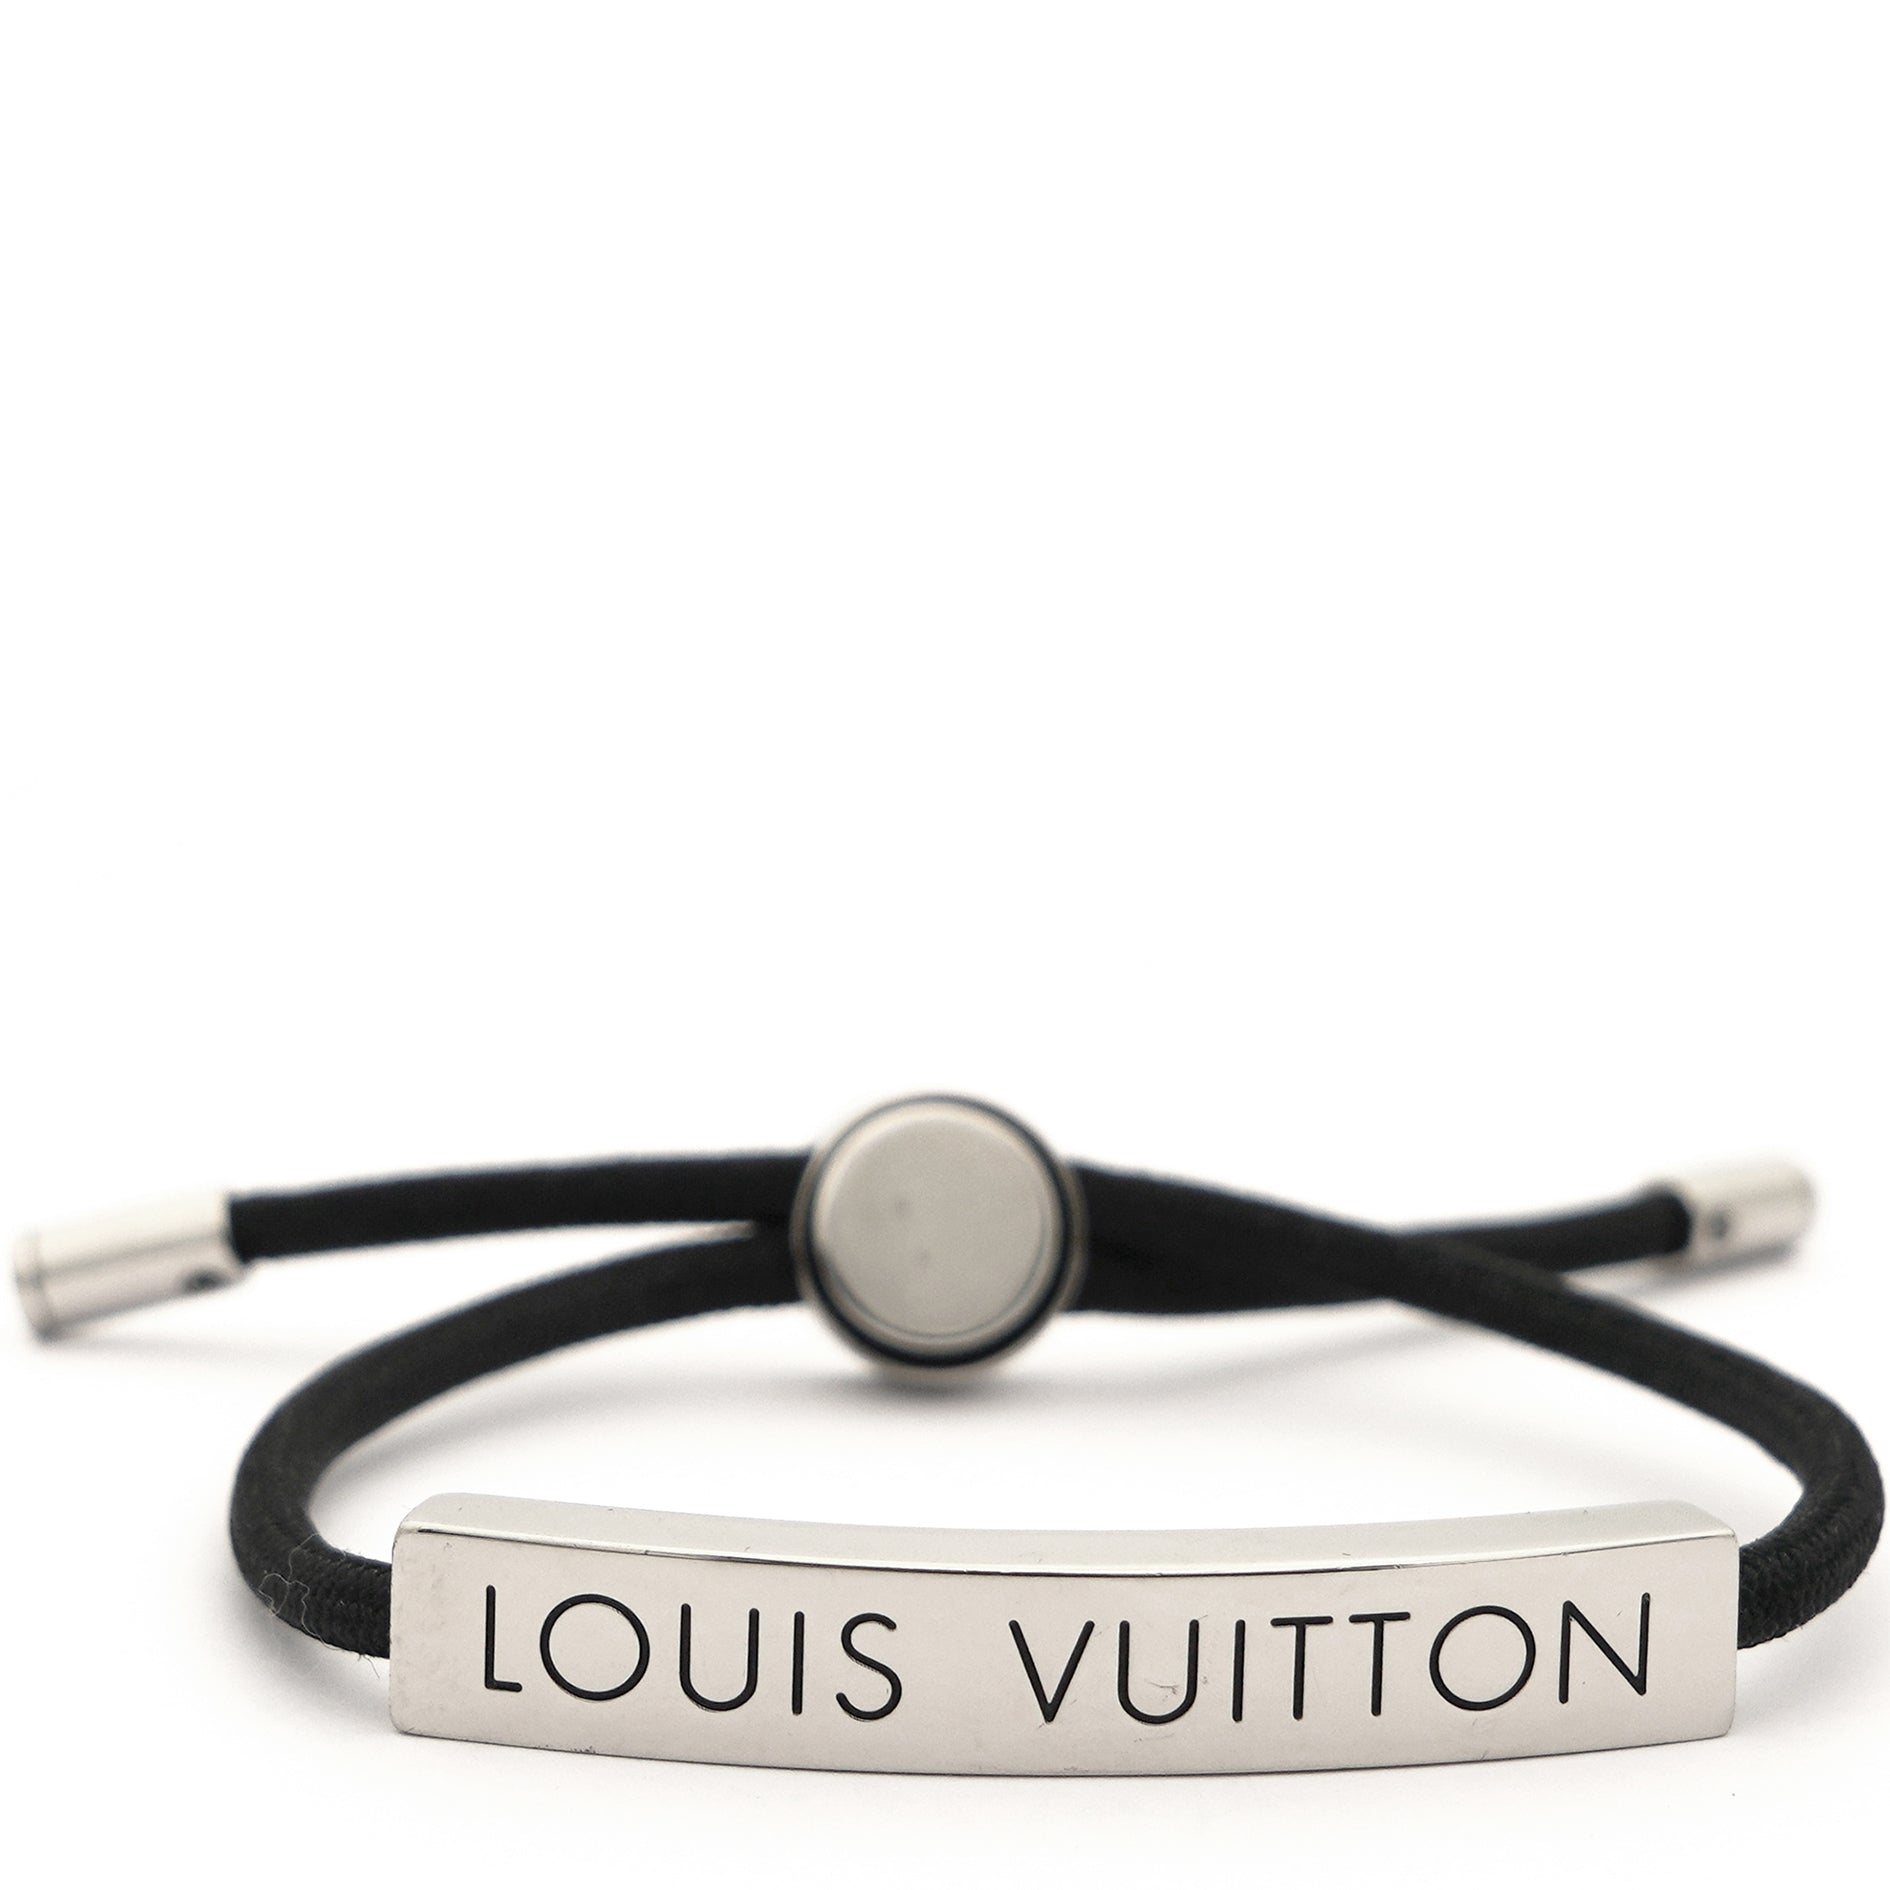 Louis Vuitton Loop It Monogram Bracelet - Black, Ruthenium-Plated Wrap,  Bracelets - LOU739626